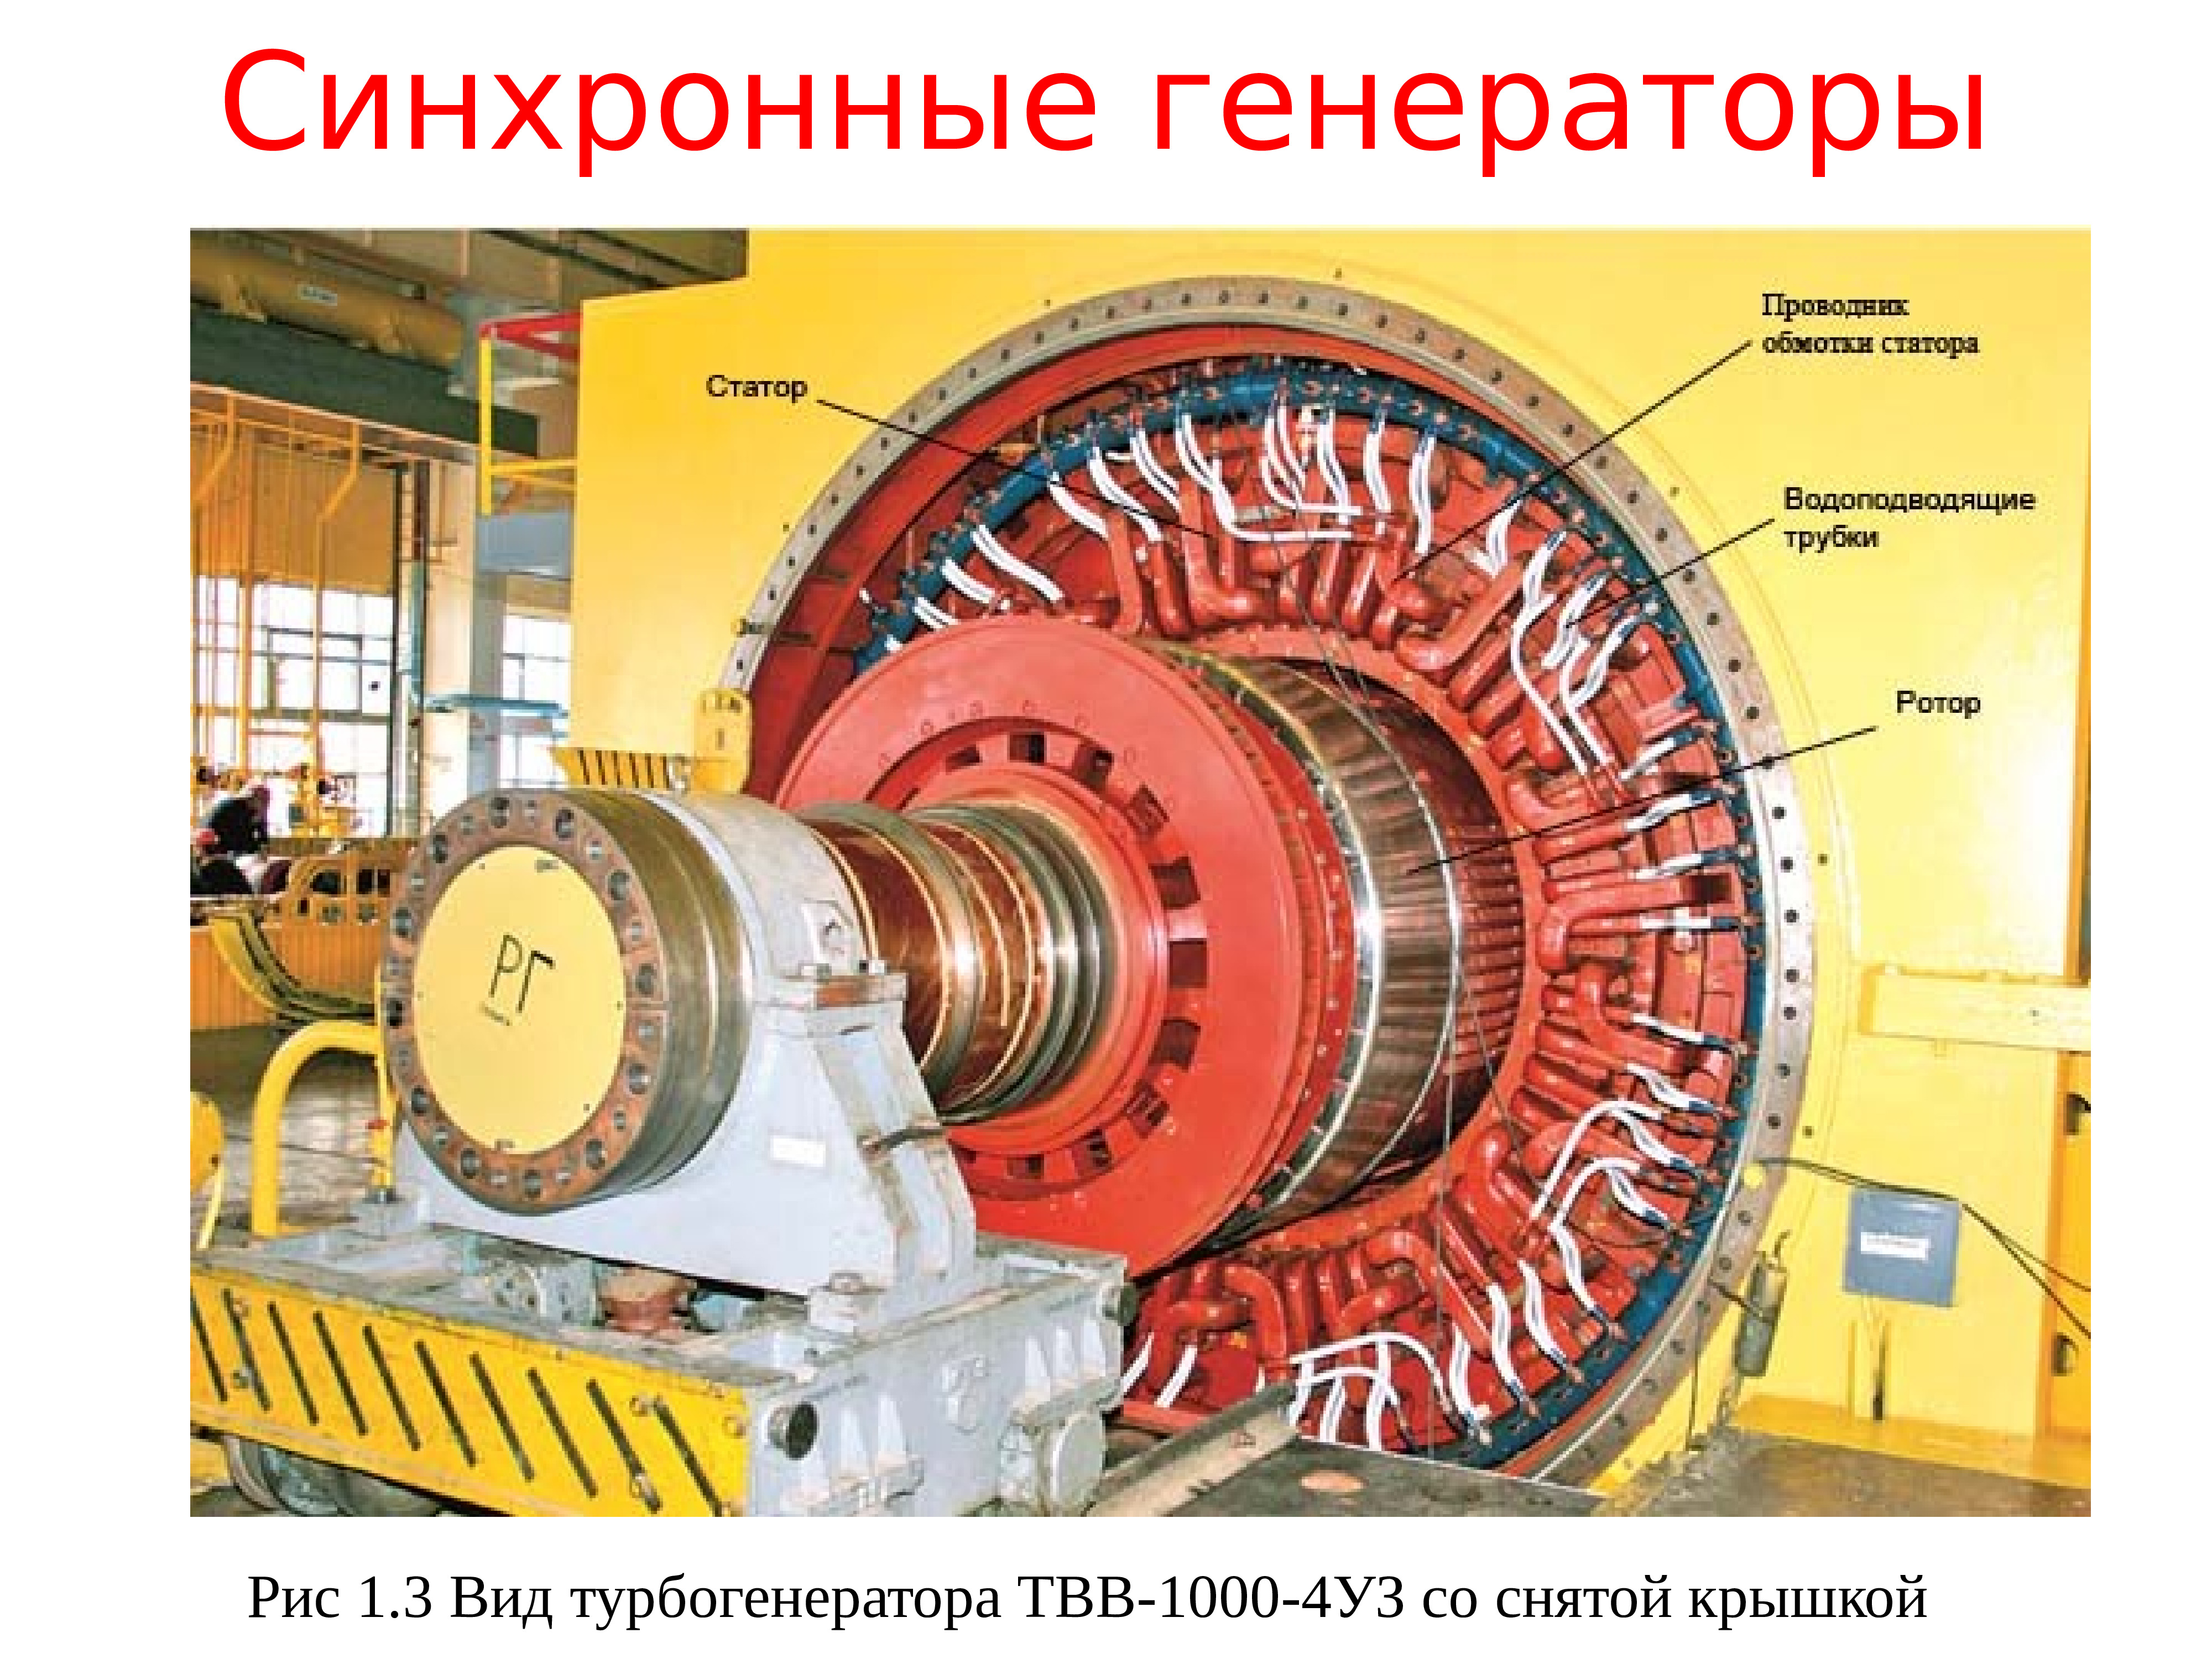 Типы синхронных генераторов. Синхронный Генератор типа МСС-128-4 ротор. Синхронный Генератор турбогенератор 500 МВТ. Конструкция ротора синхронного генератора. Генератор синхронный 1000 МВТ.